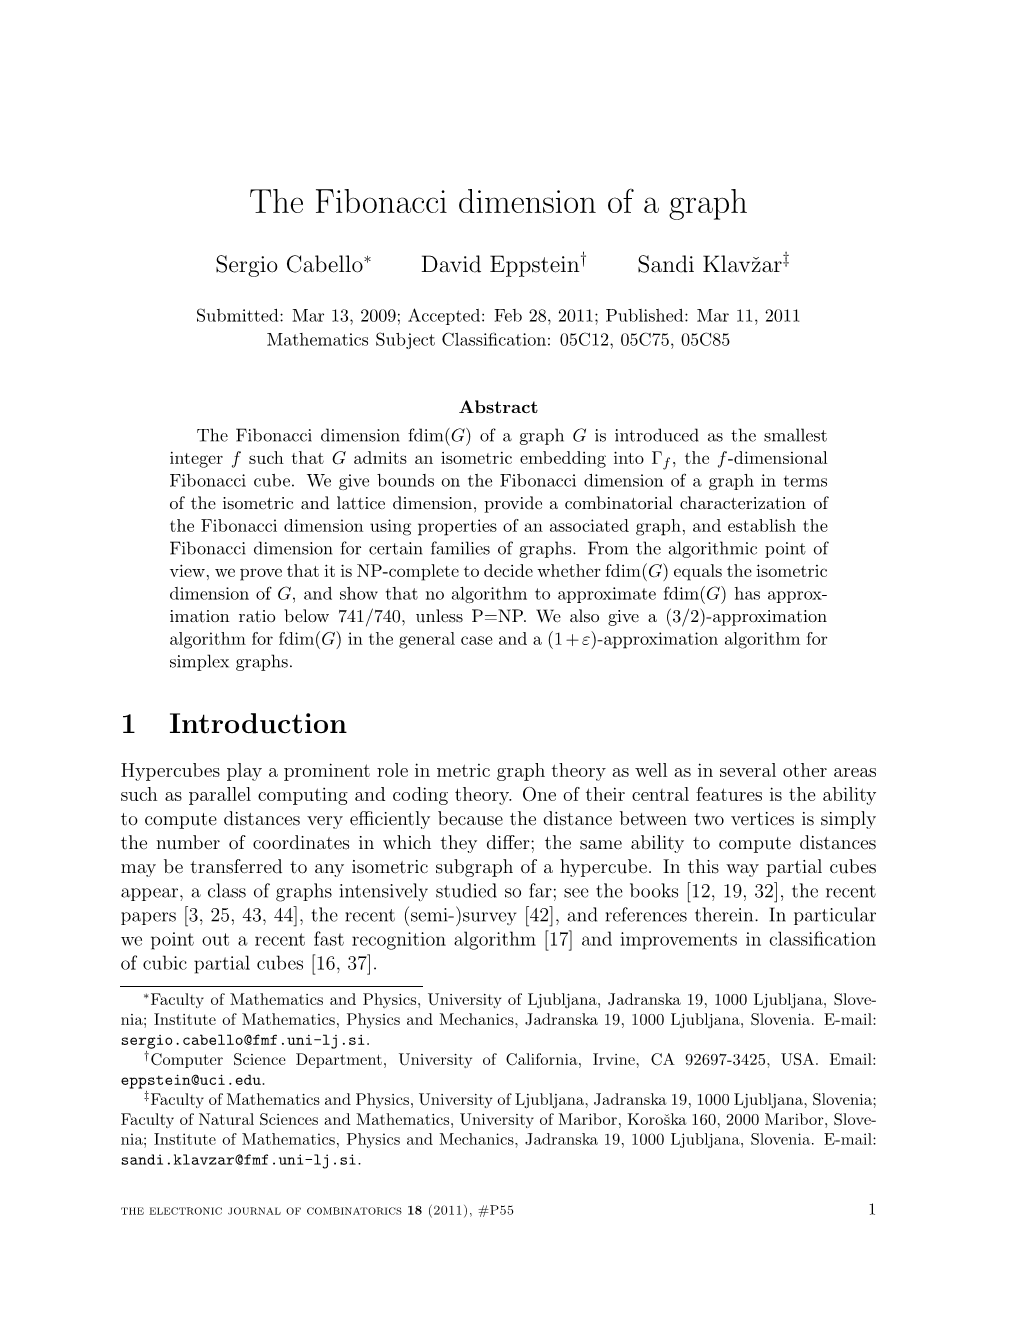 The Fibonacci Dimension of a Graph